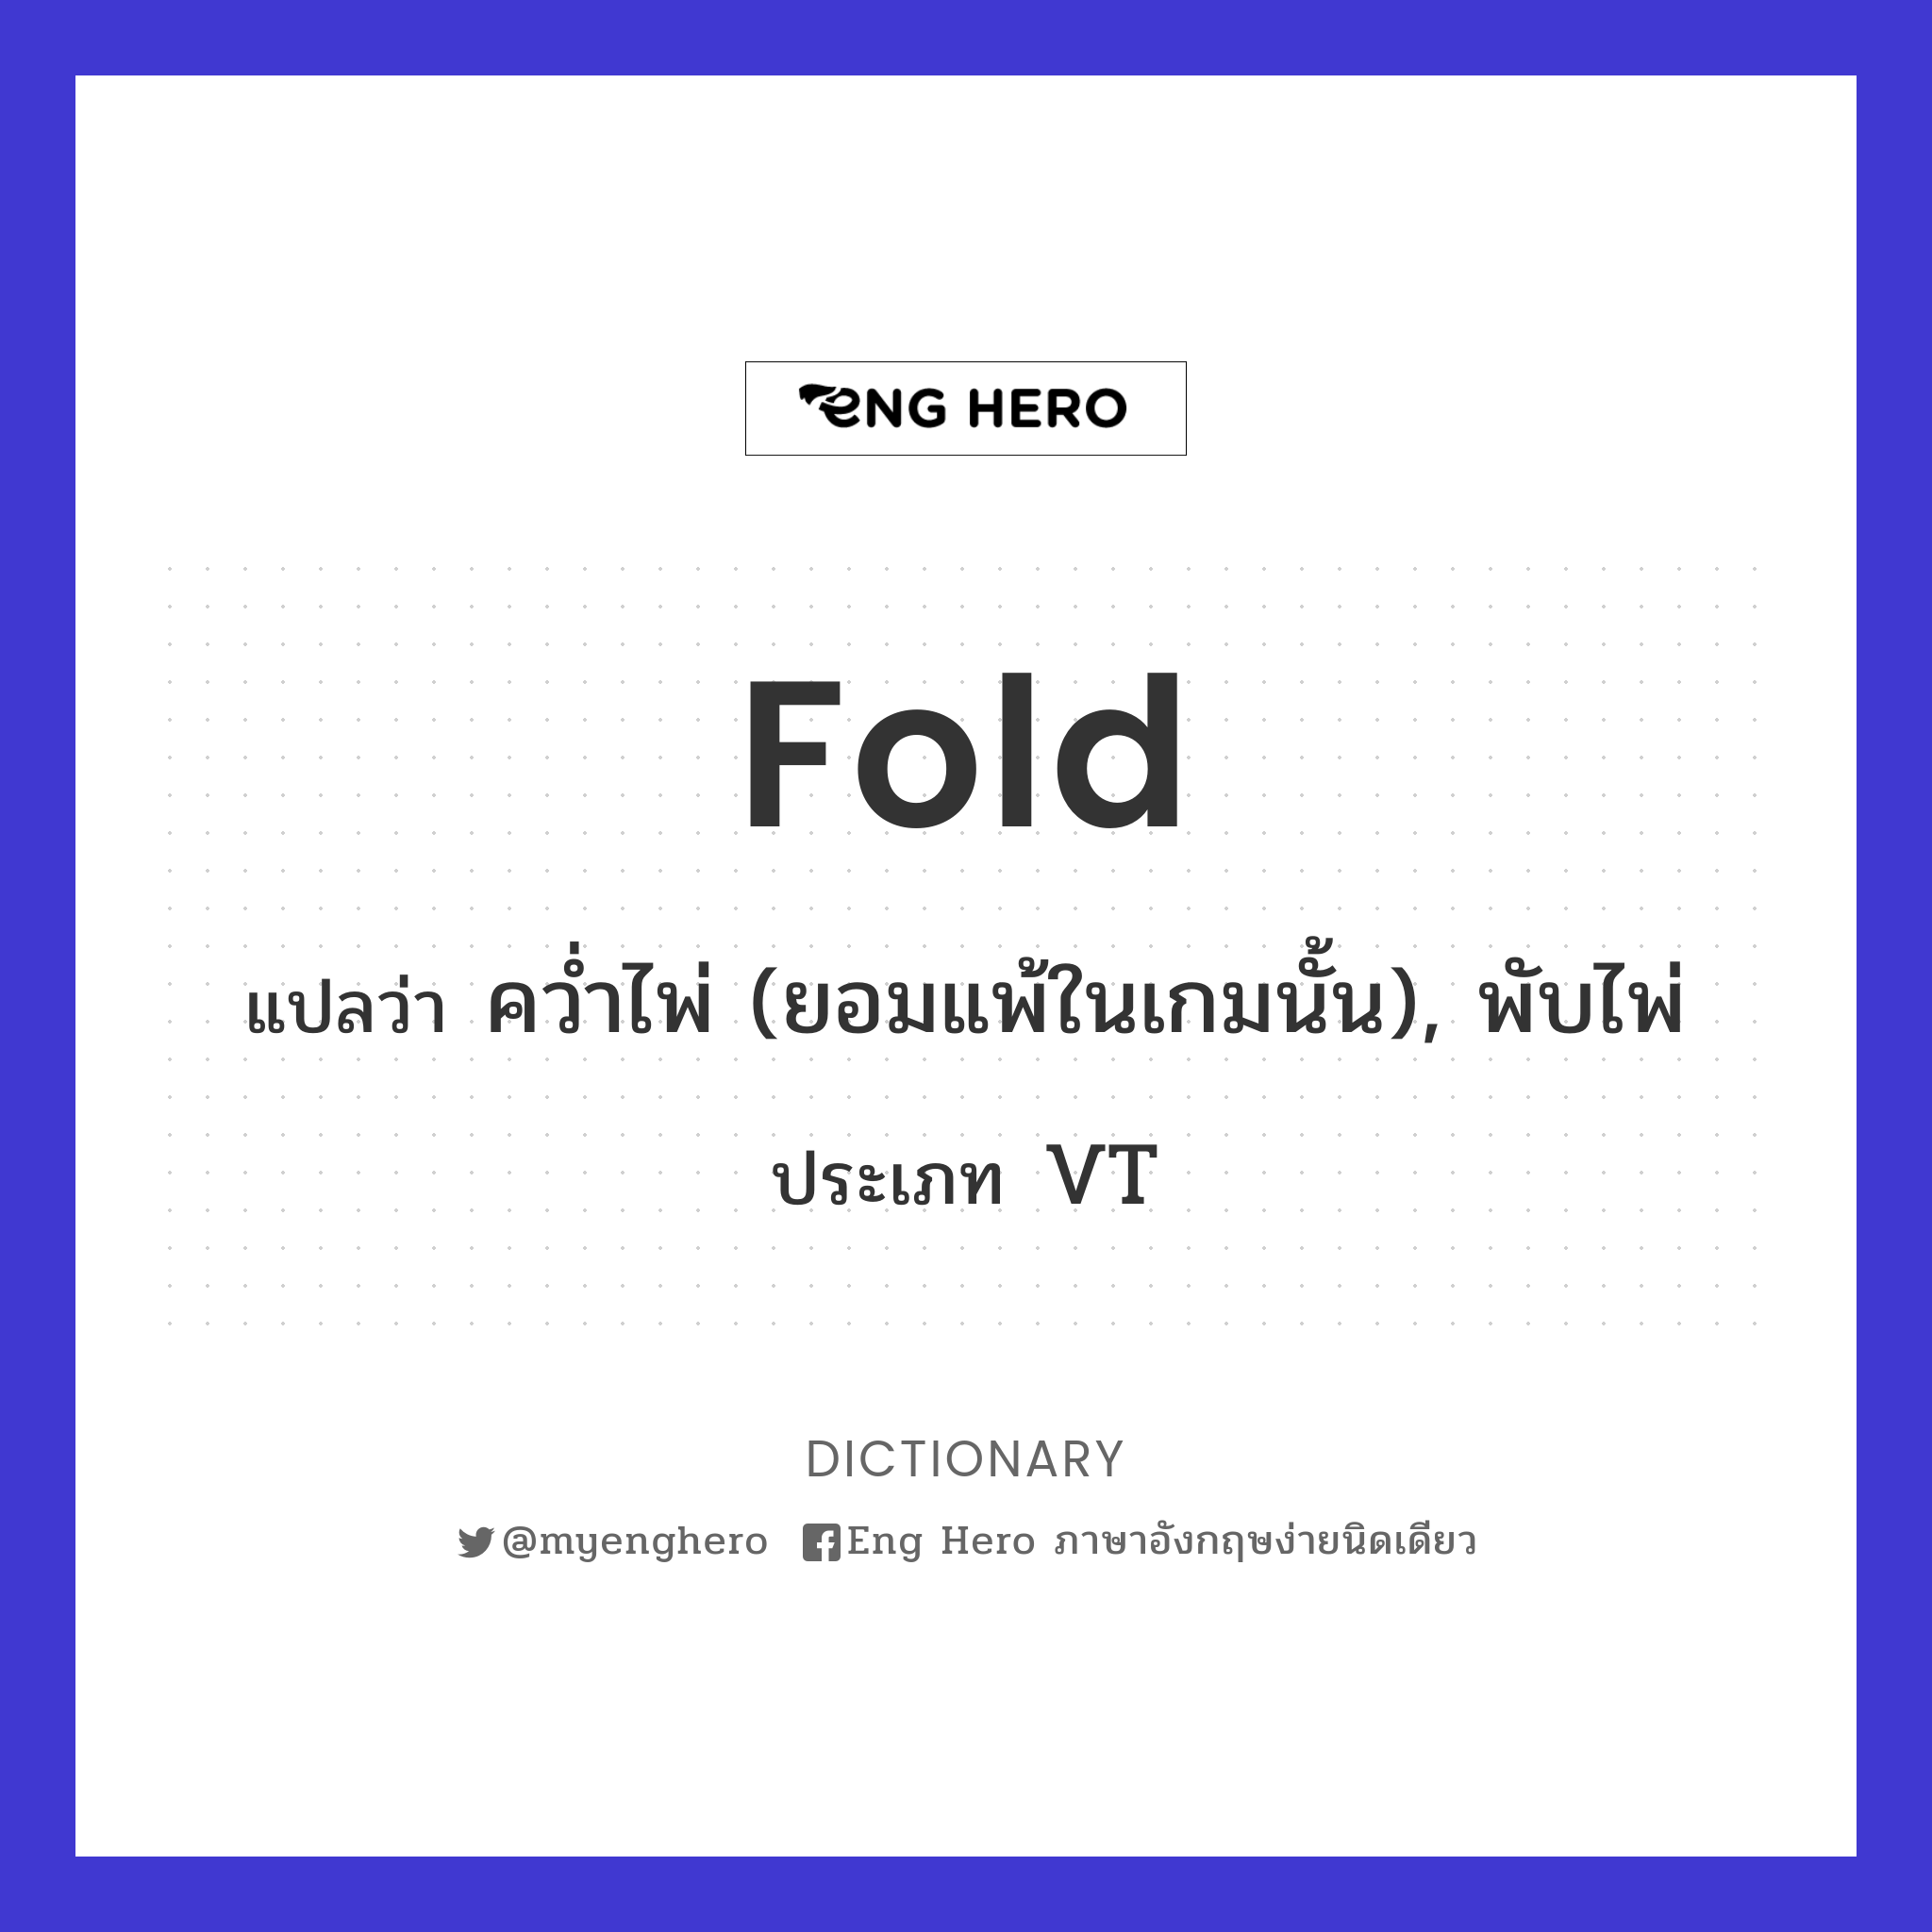 fold